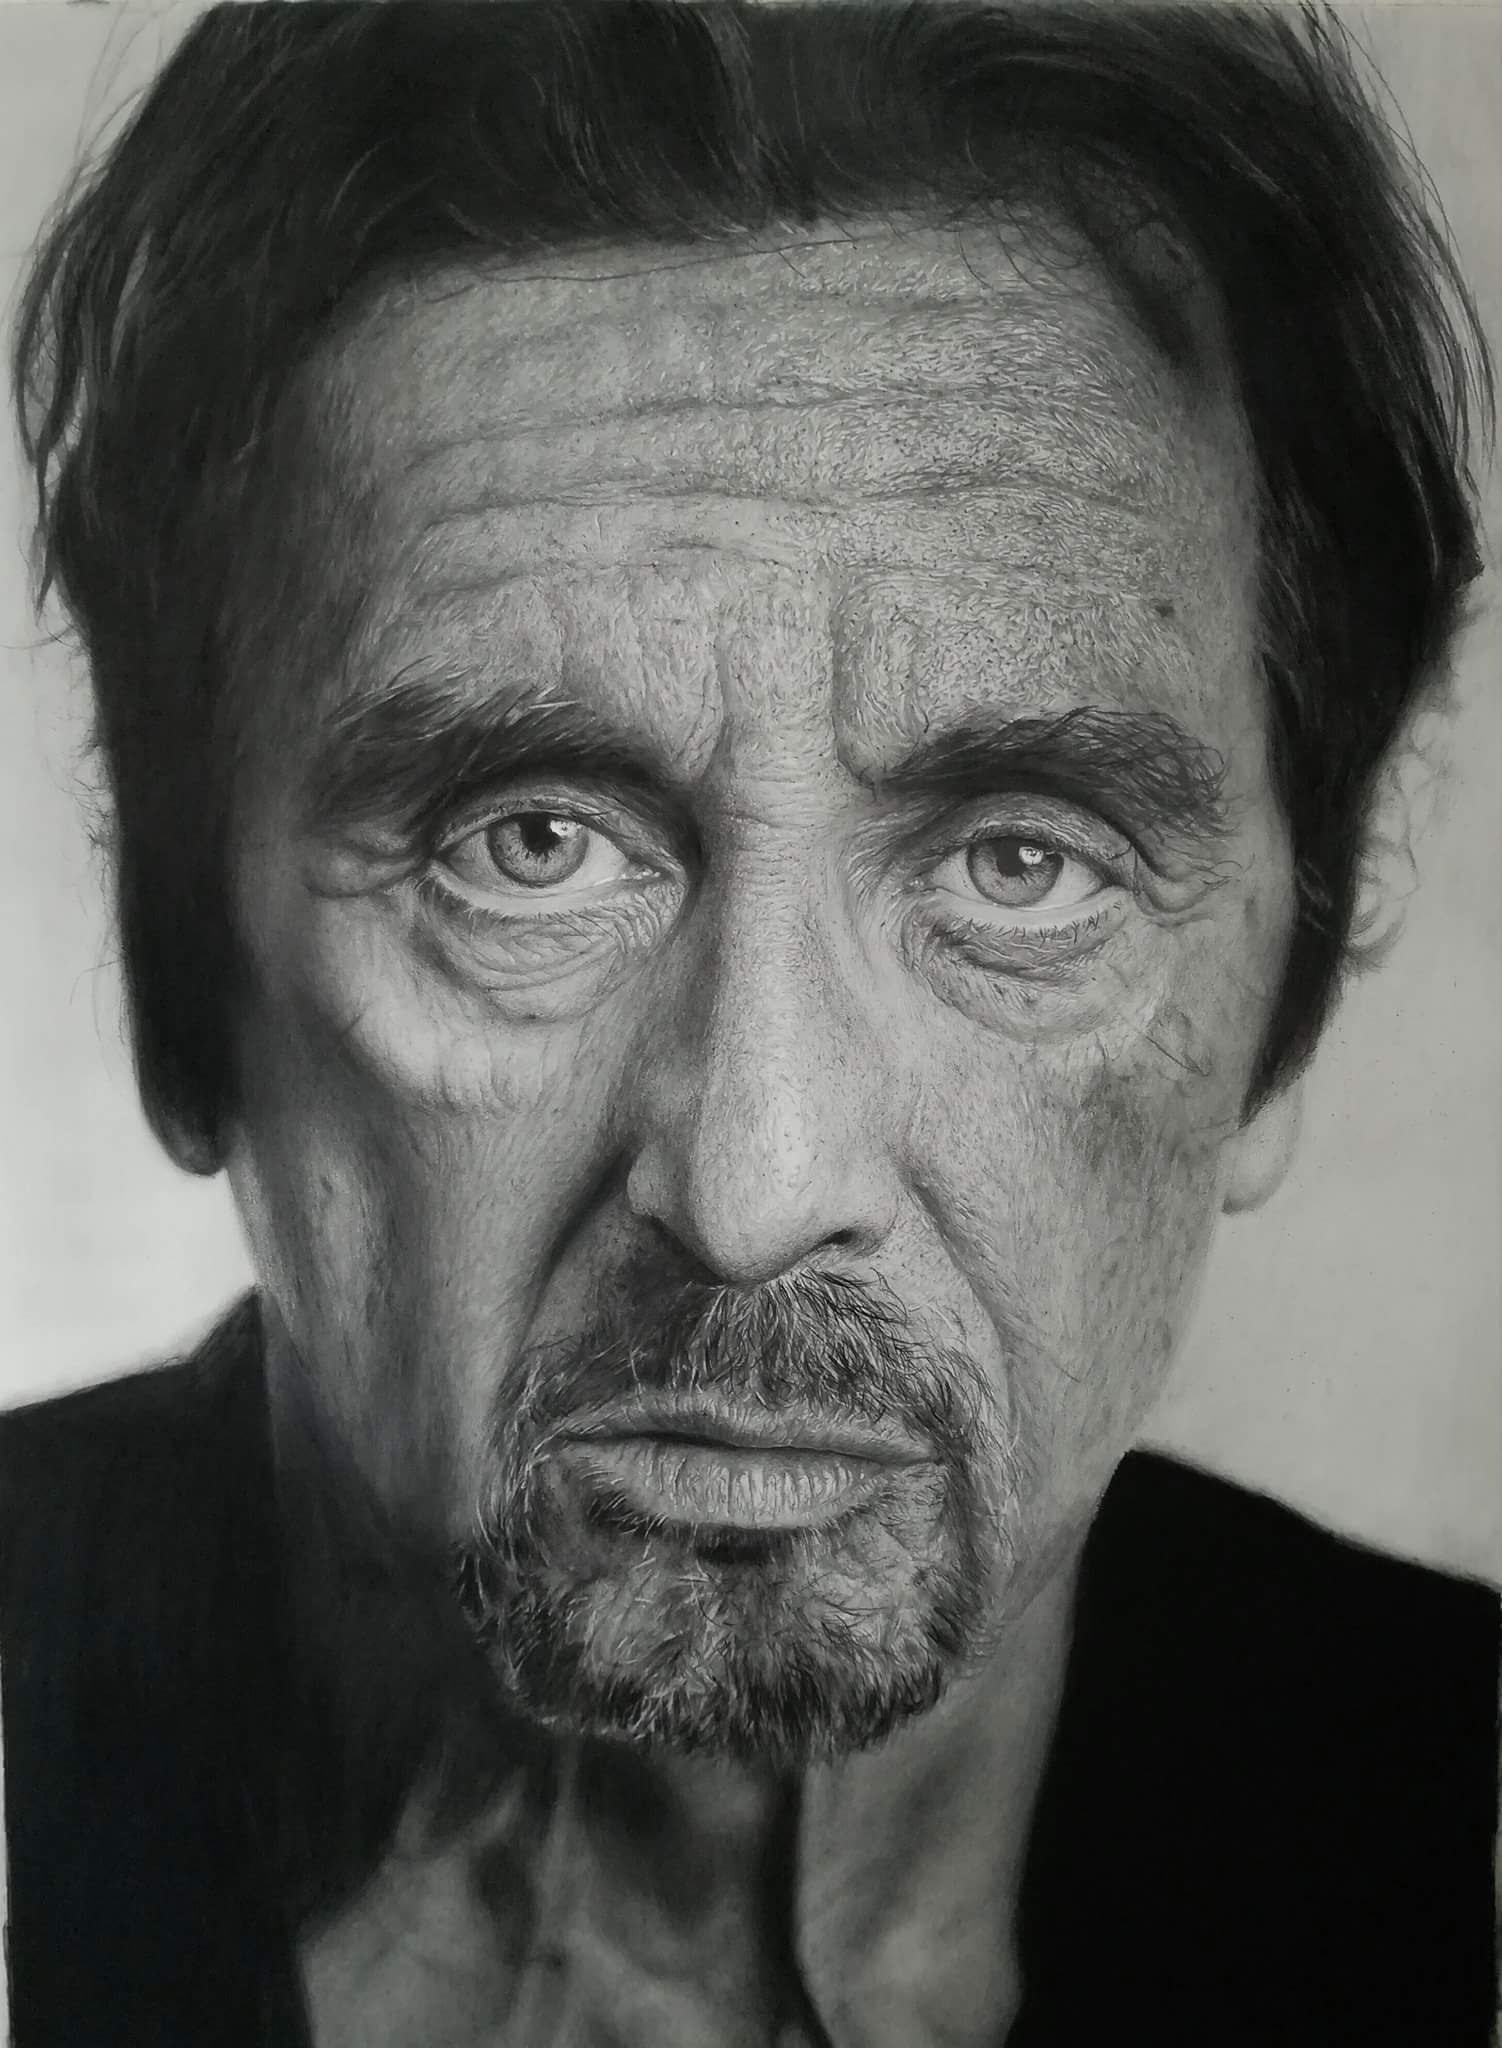 Ritratto iperrealistico di Al Pacino